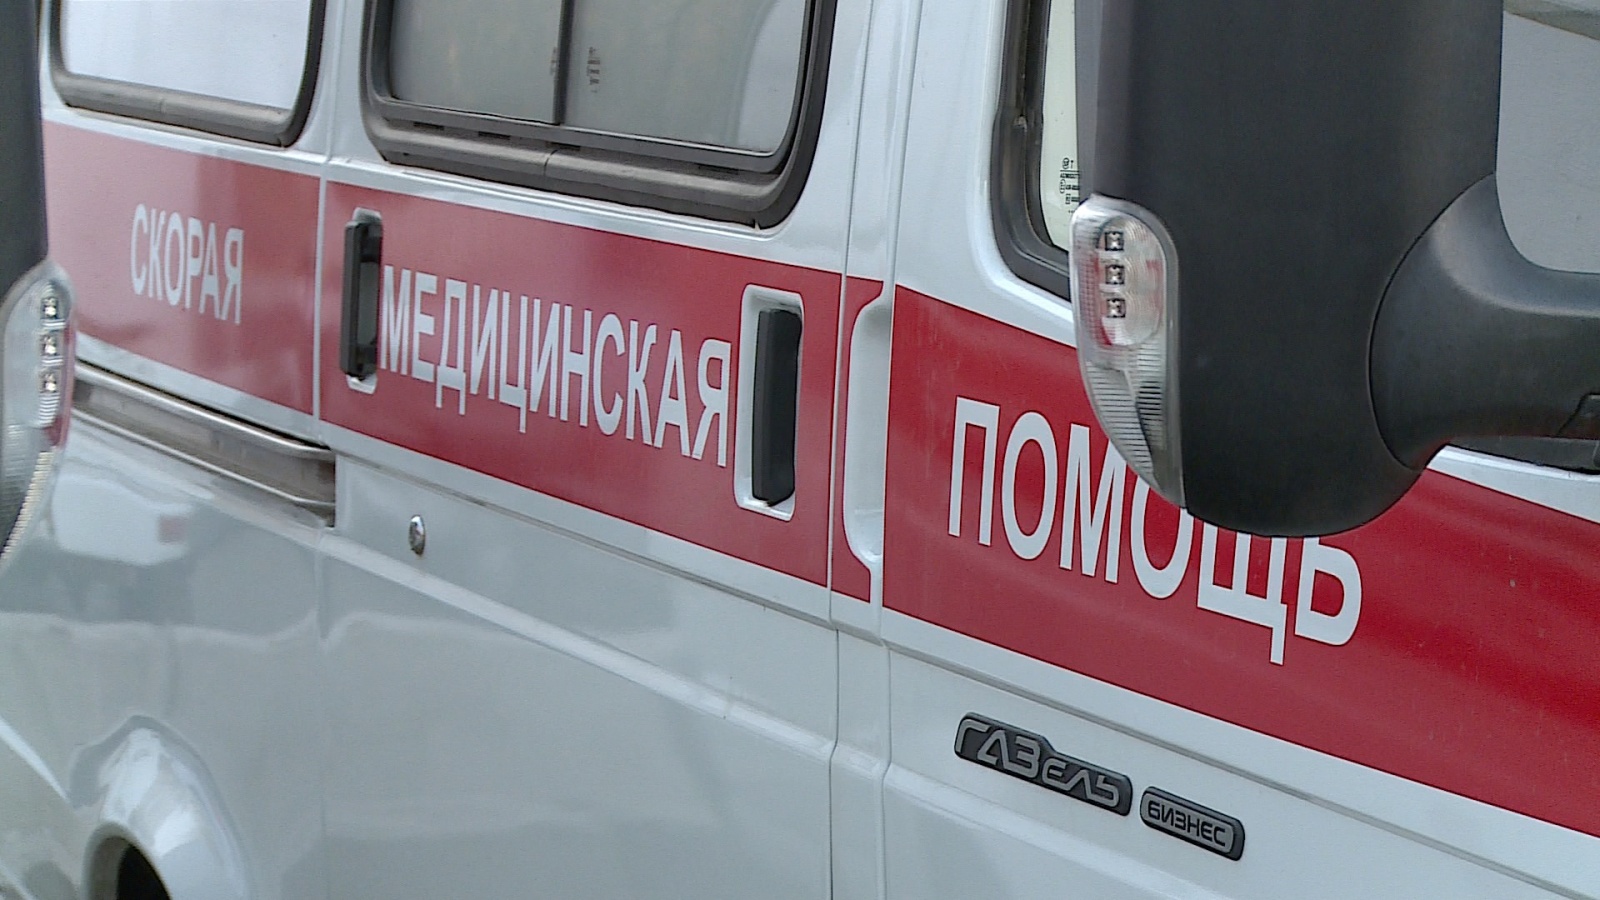 Астраханец умер от кровопотери, порезавшись циркулярной пилой